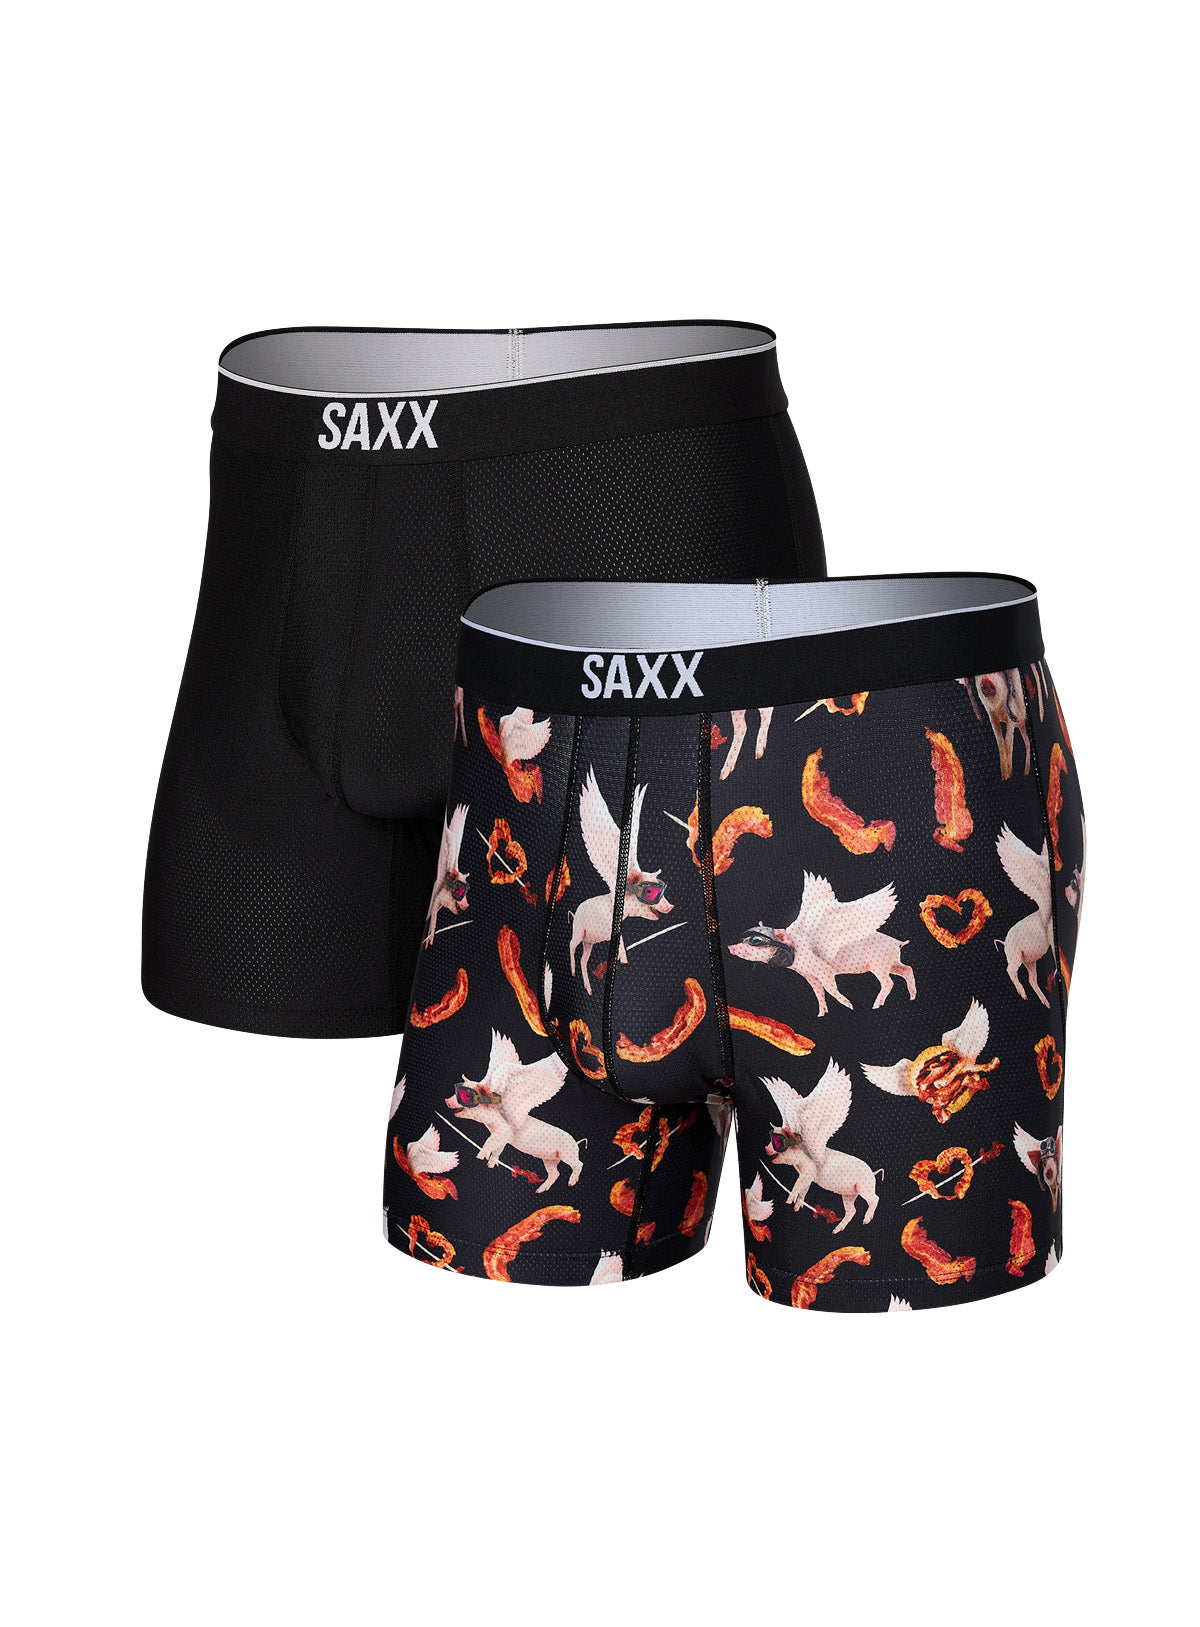 SAXX Underwear, SAXX Boxers